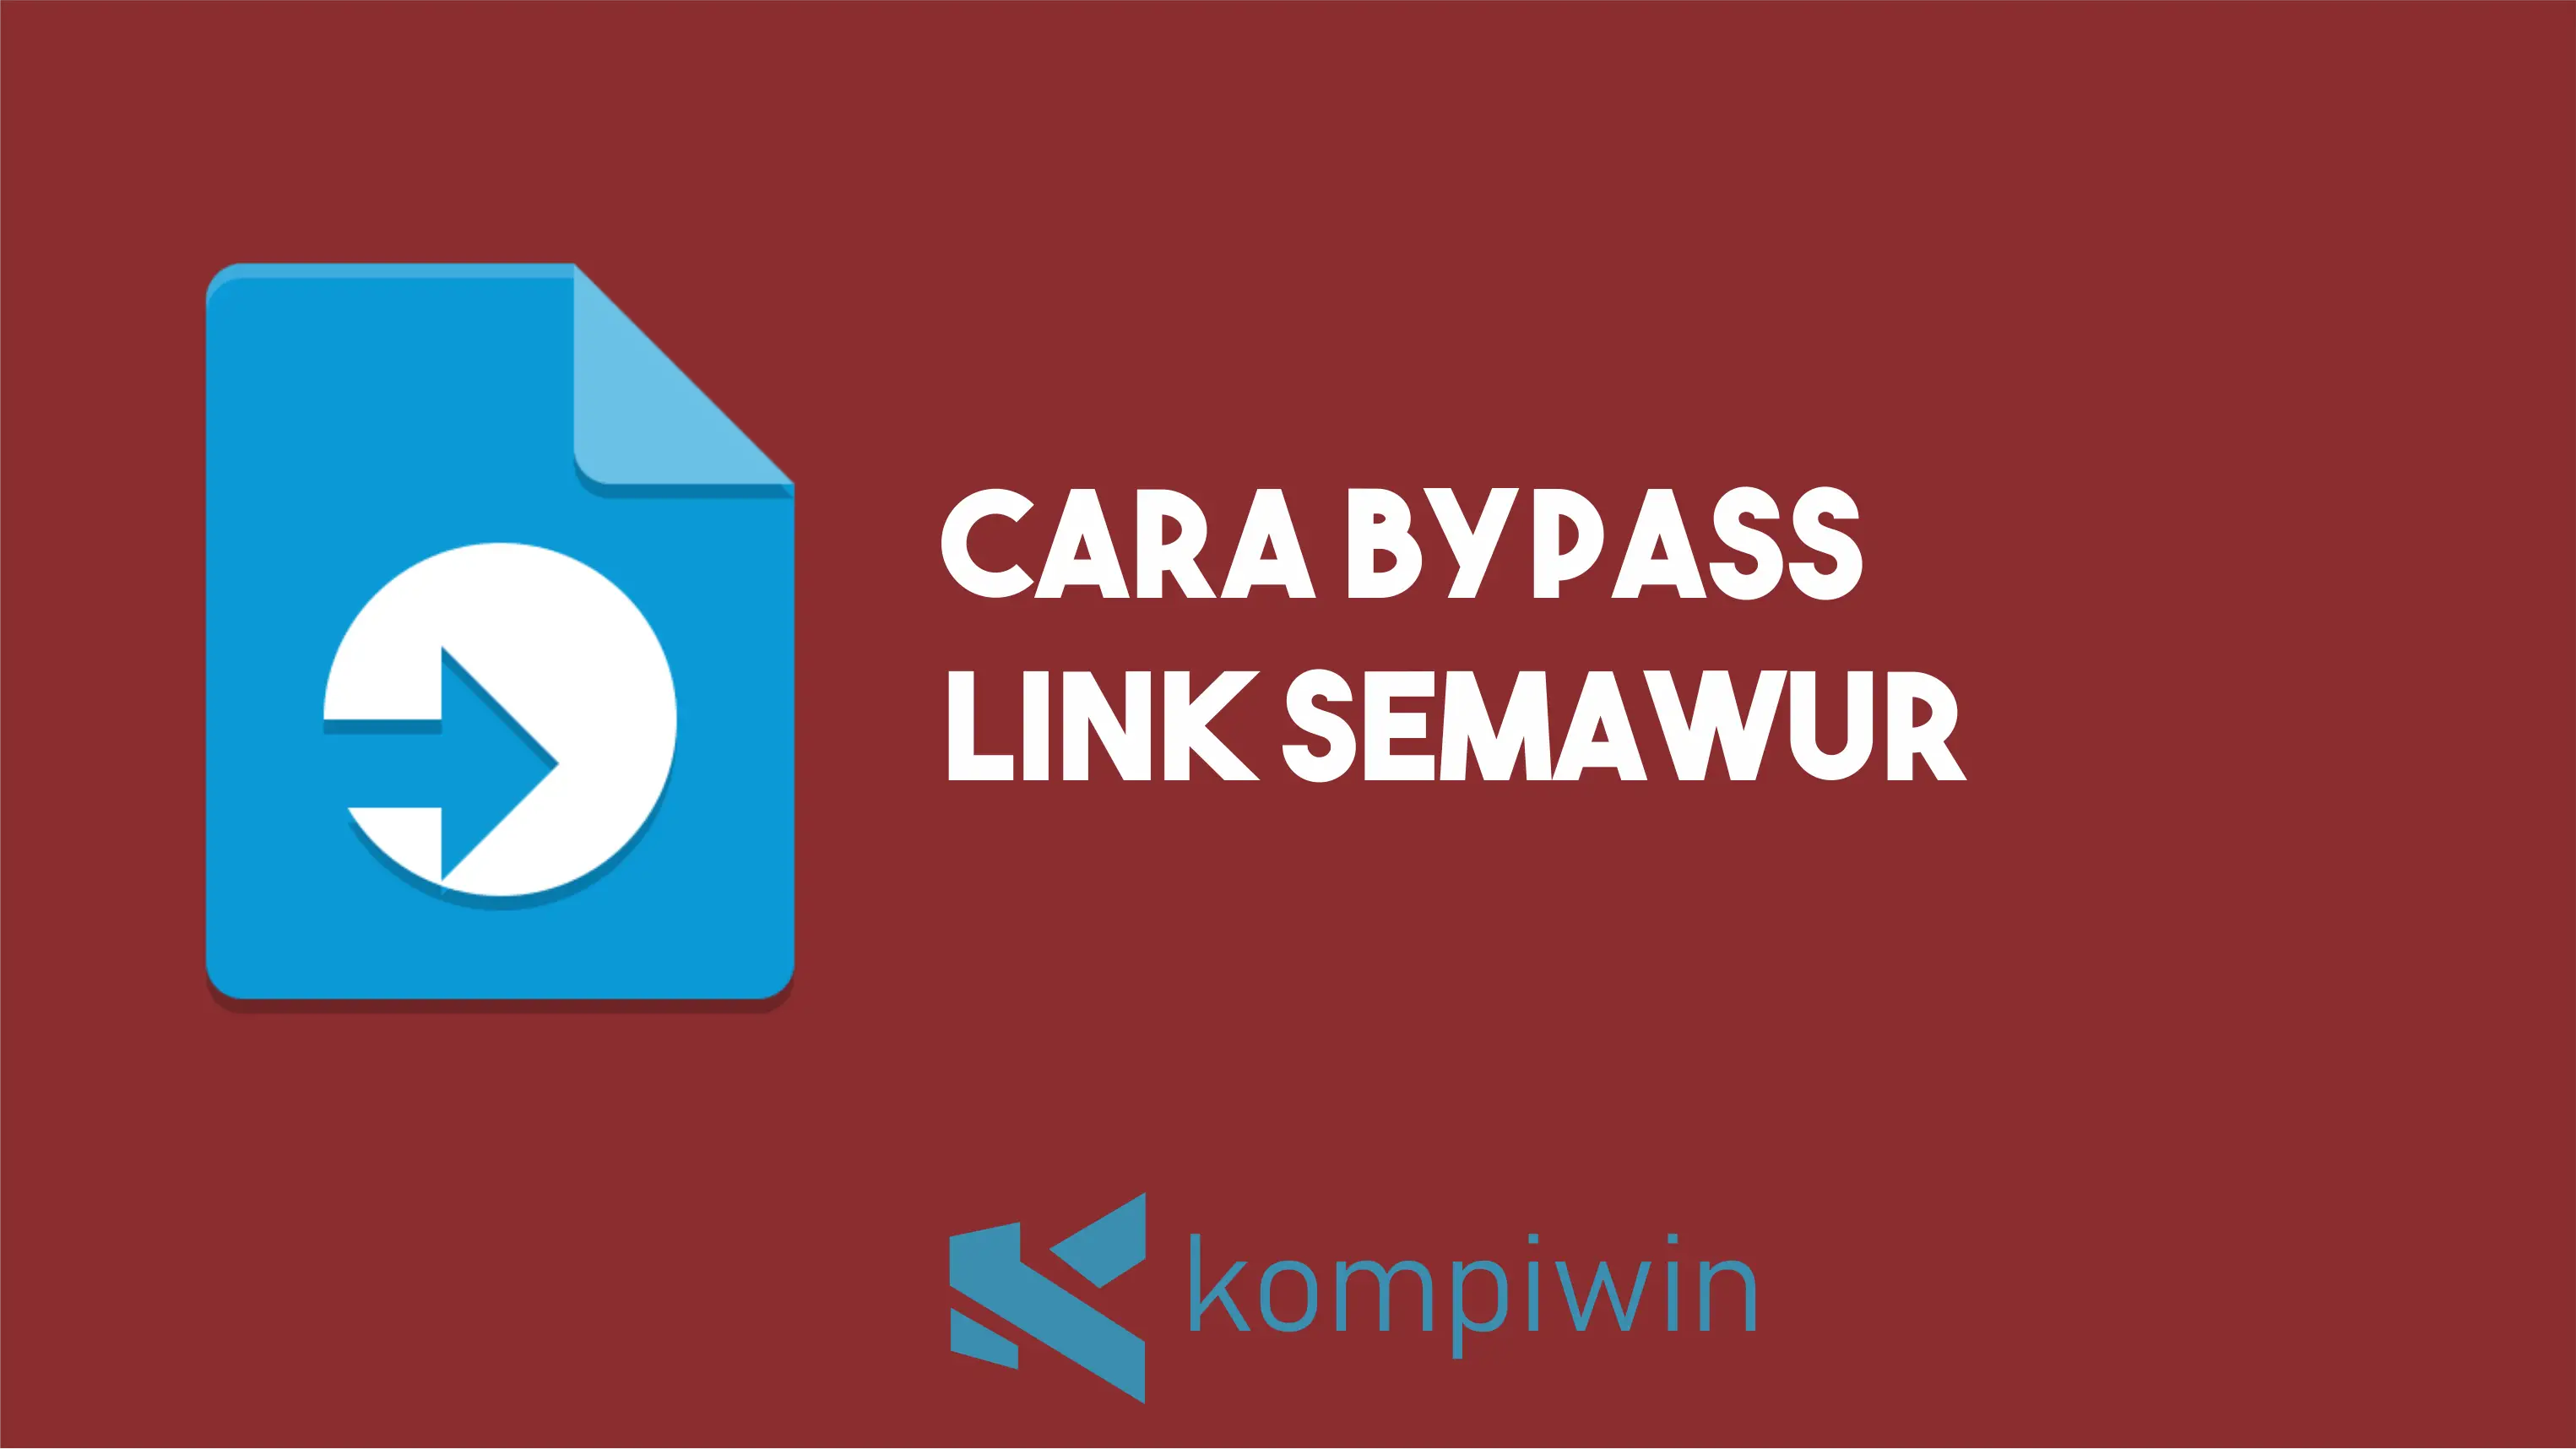 Cara Bypass Link Semawur